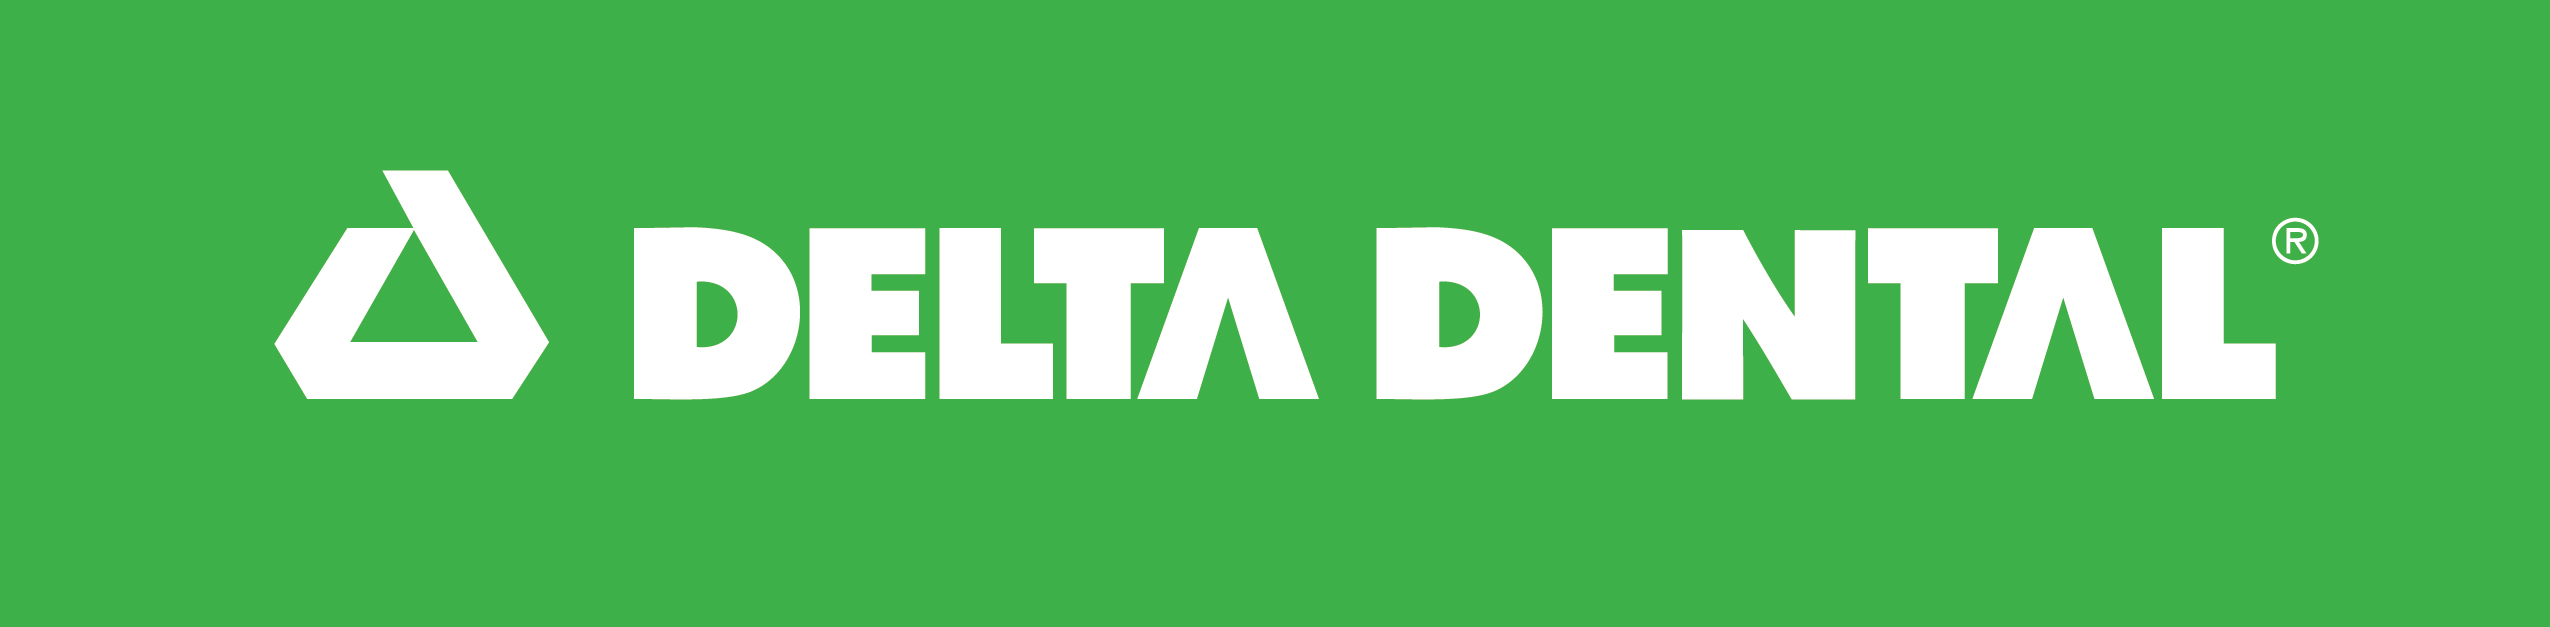 Delta Dental (Nivel 2)